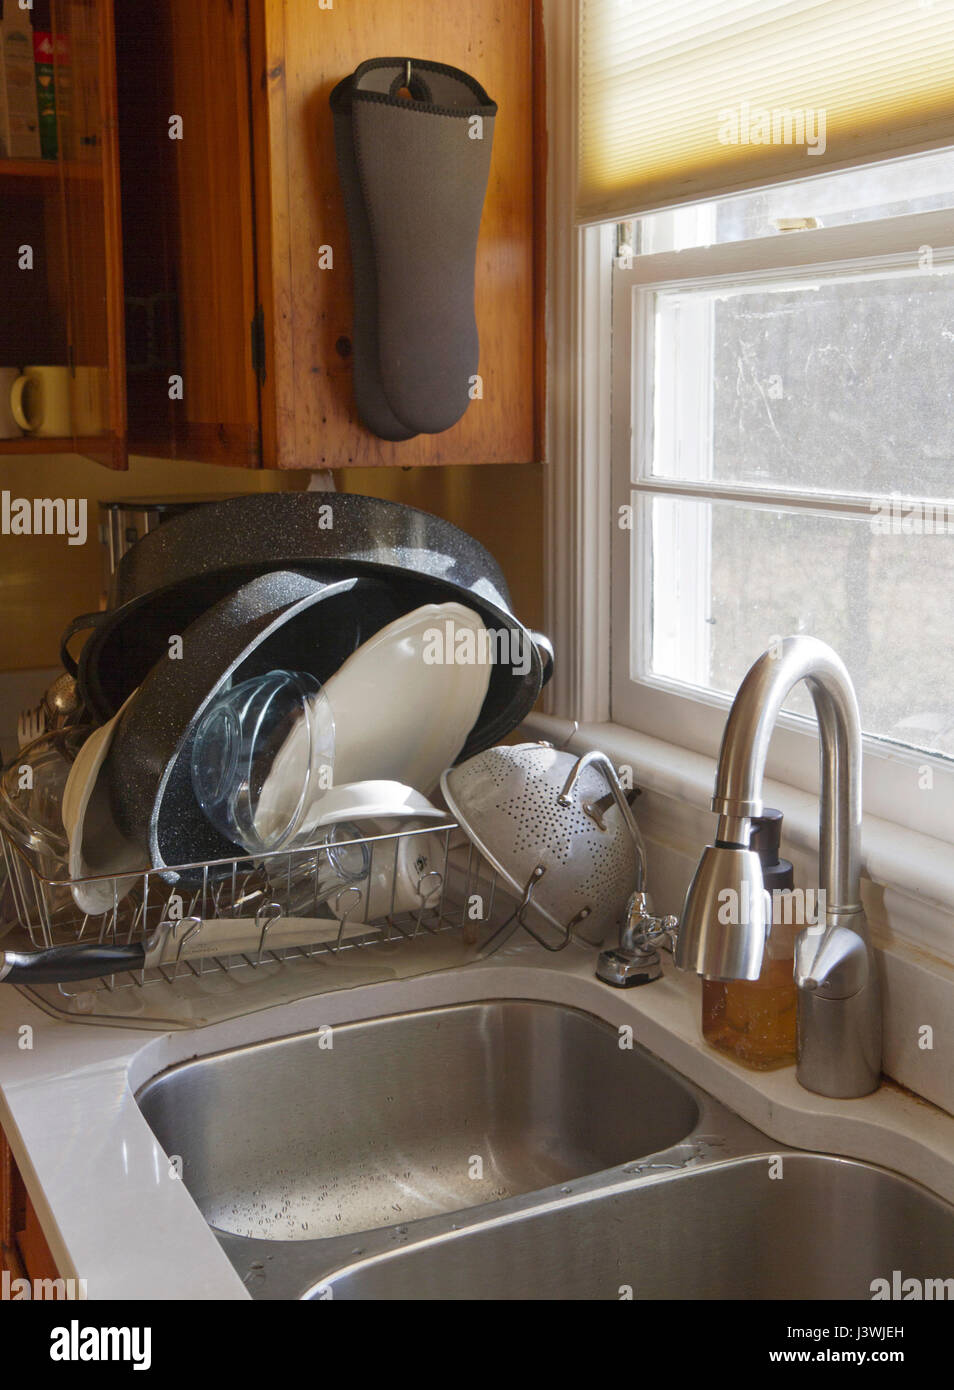 Una pila de lavar platos a mano secado en un plato el drenaje del fregadero  en el sol de la mañana que entra a través de una ventana Fotografía de  stock -